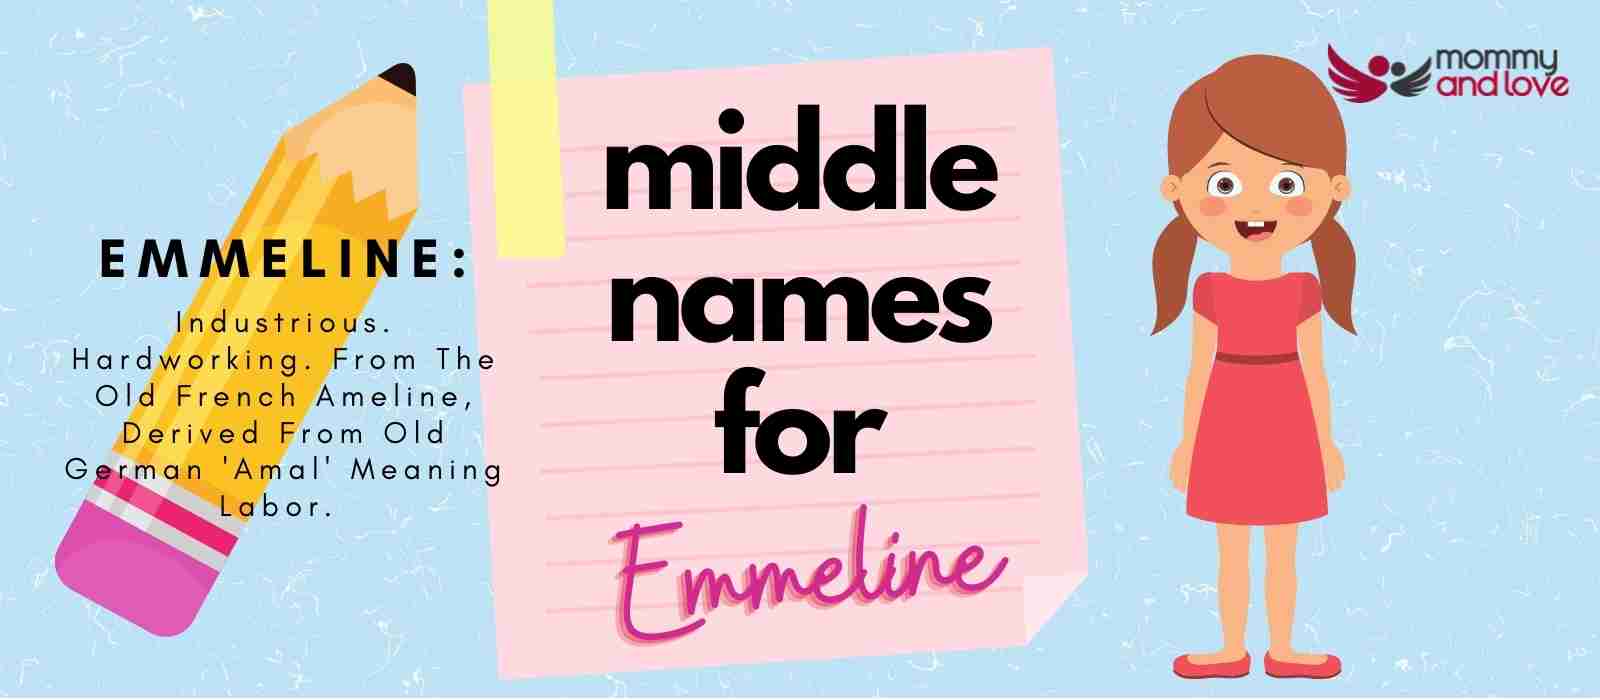 Middle Names for Emmeline